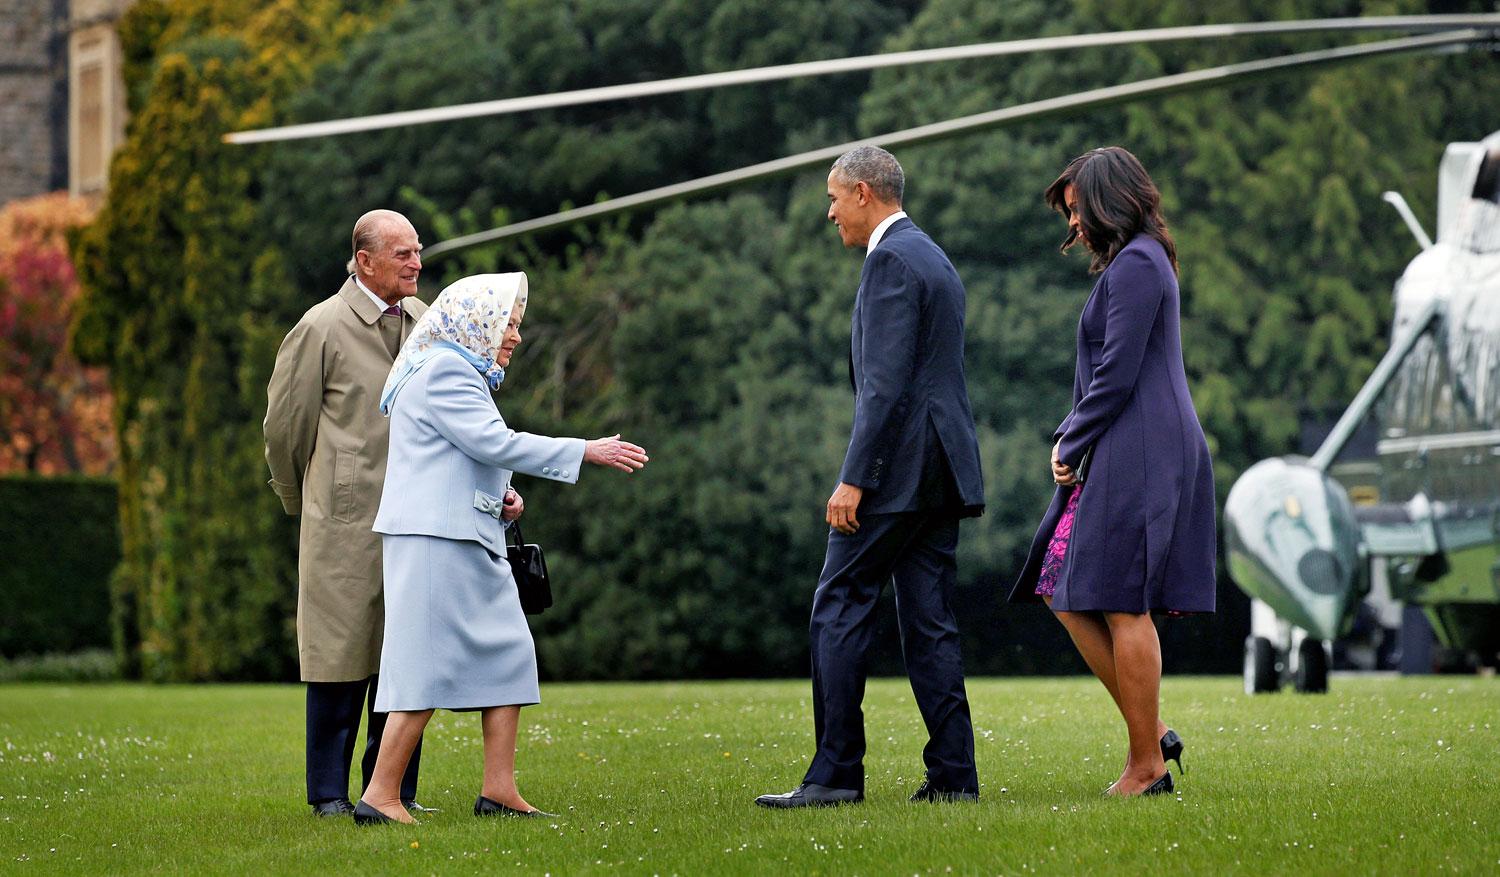 Fogadás a gyepen. II. Erzsébet a windsori kastélynál köszönti az amerikai elnöki párt